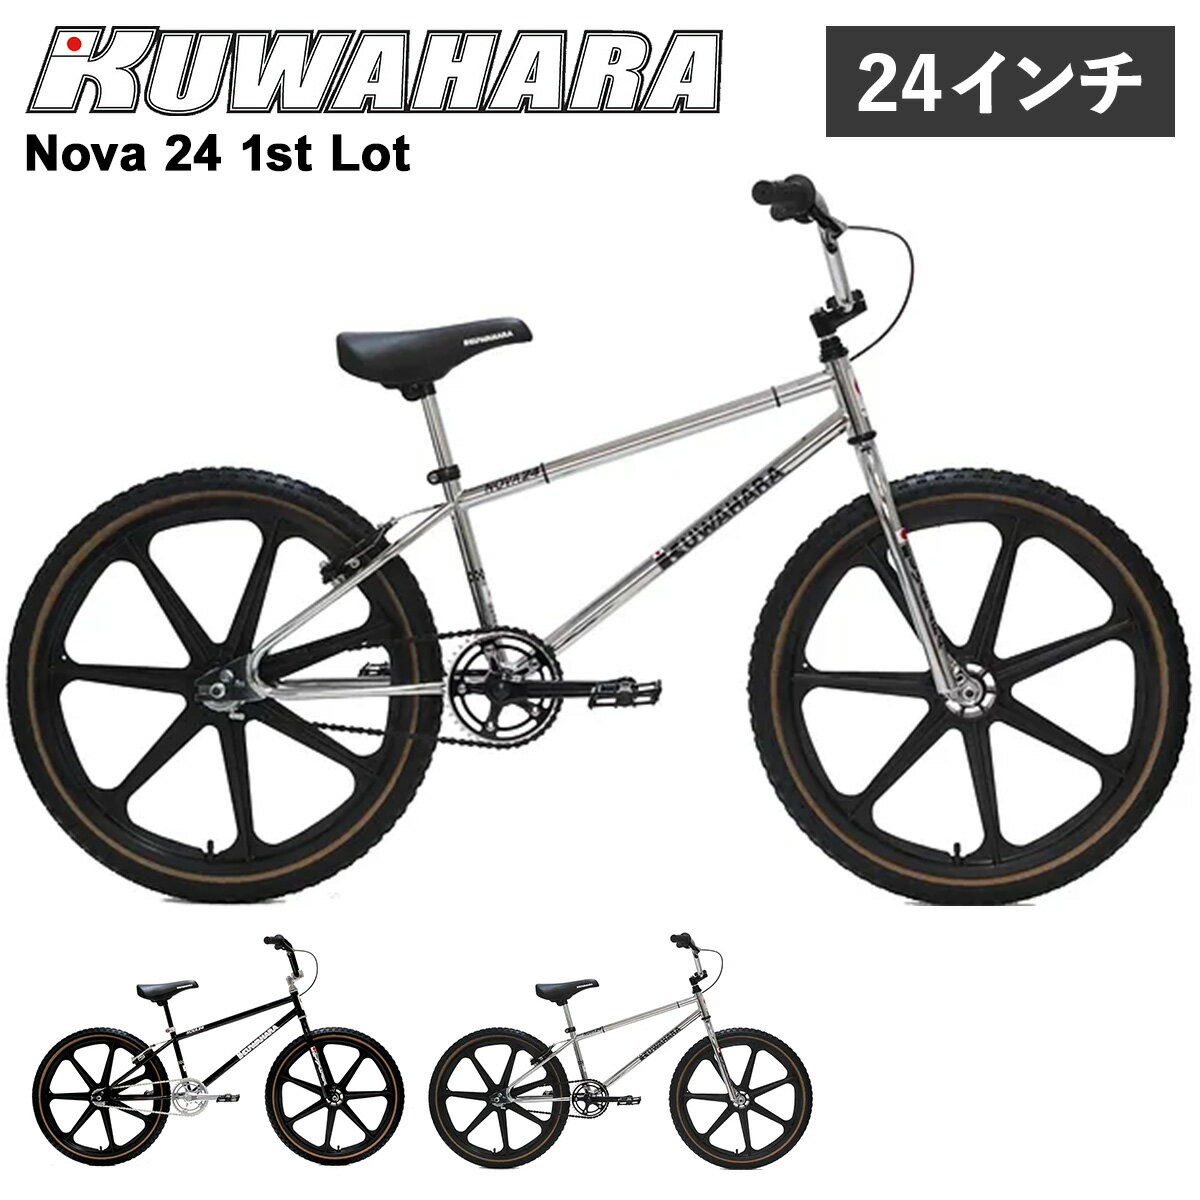 クワハラ KUWAHARA BMX 24インチ 自転車 ストリート バイク BIKE 半完成車 街乗り Nova 24 1st Lot ブラック ホワイト 黒 白